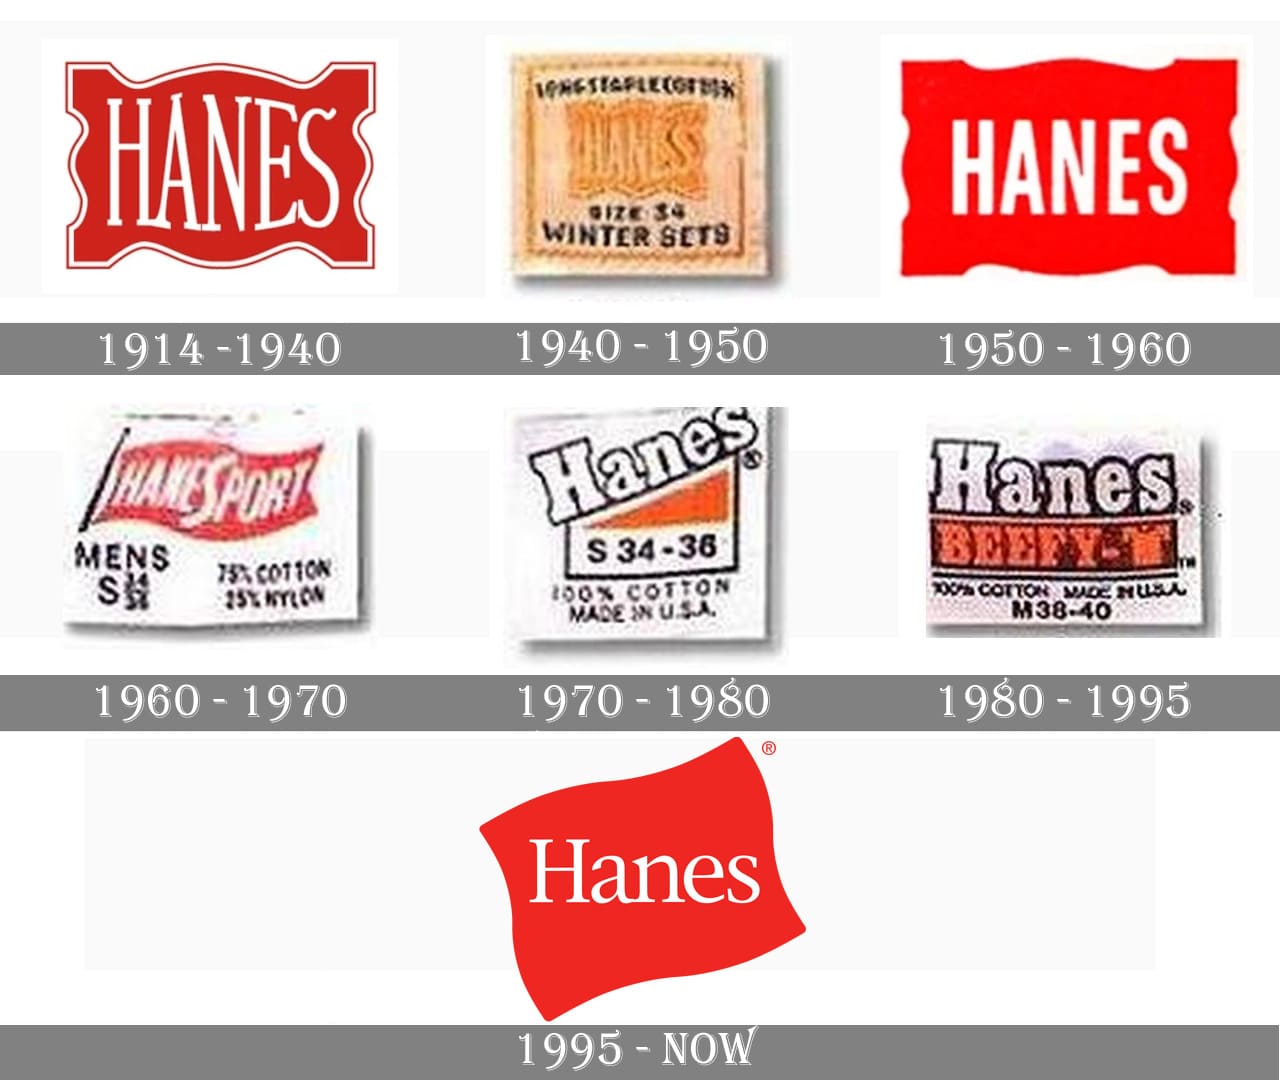 Hanesbrands Inc.: Culture